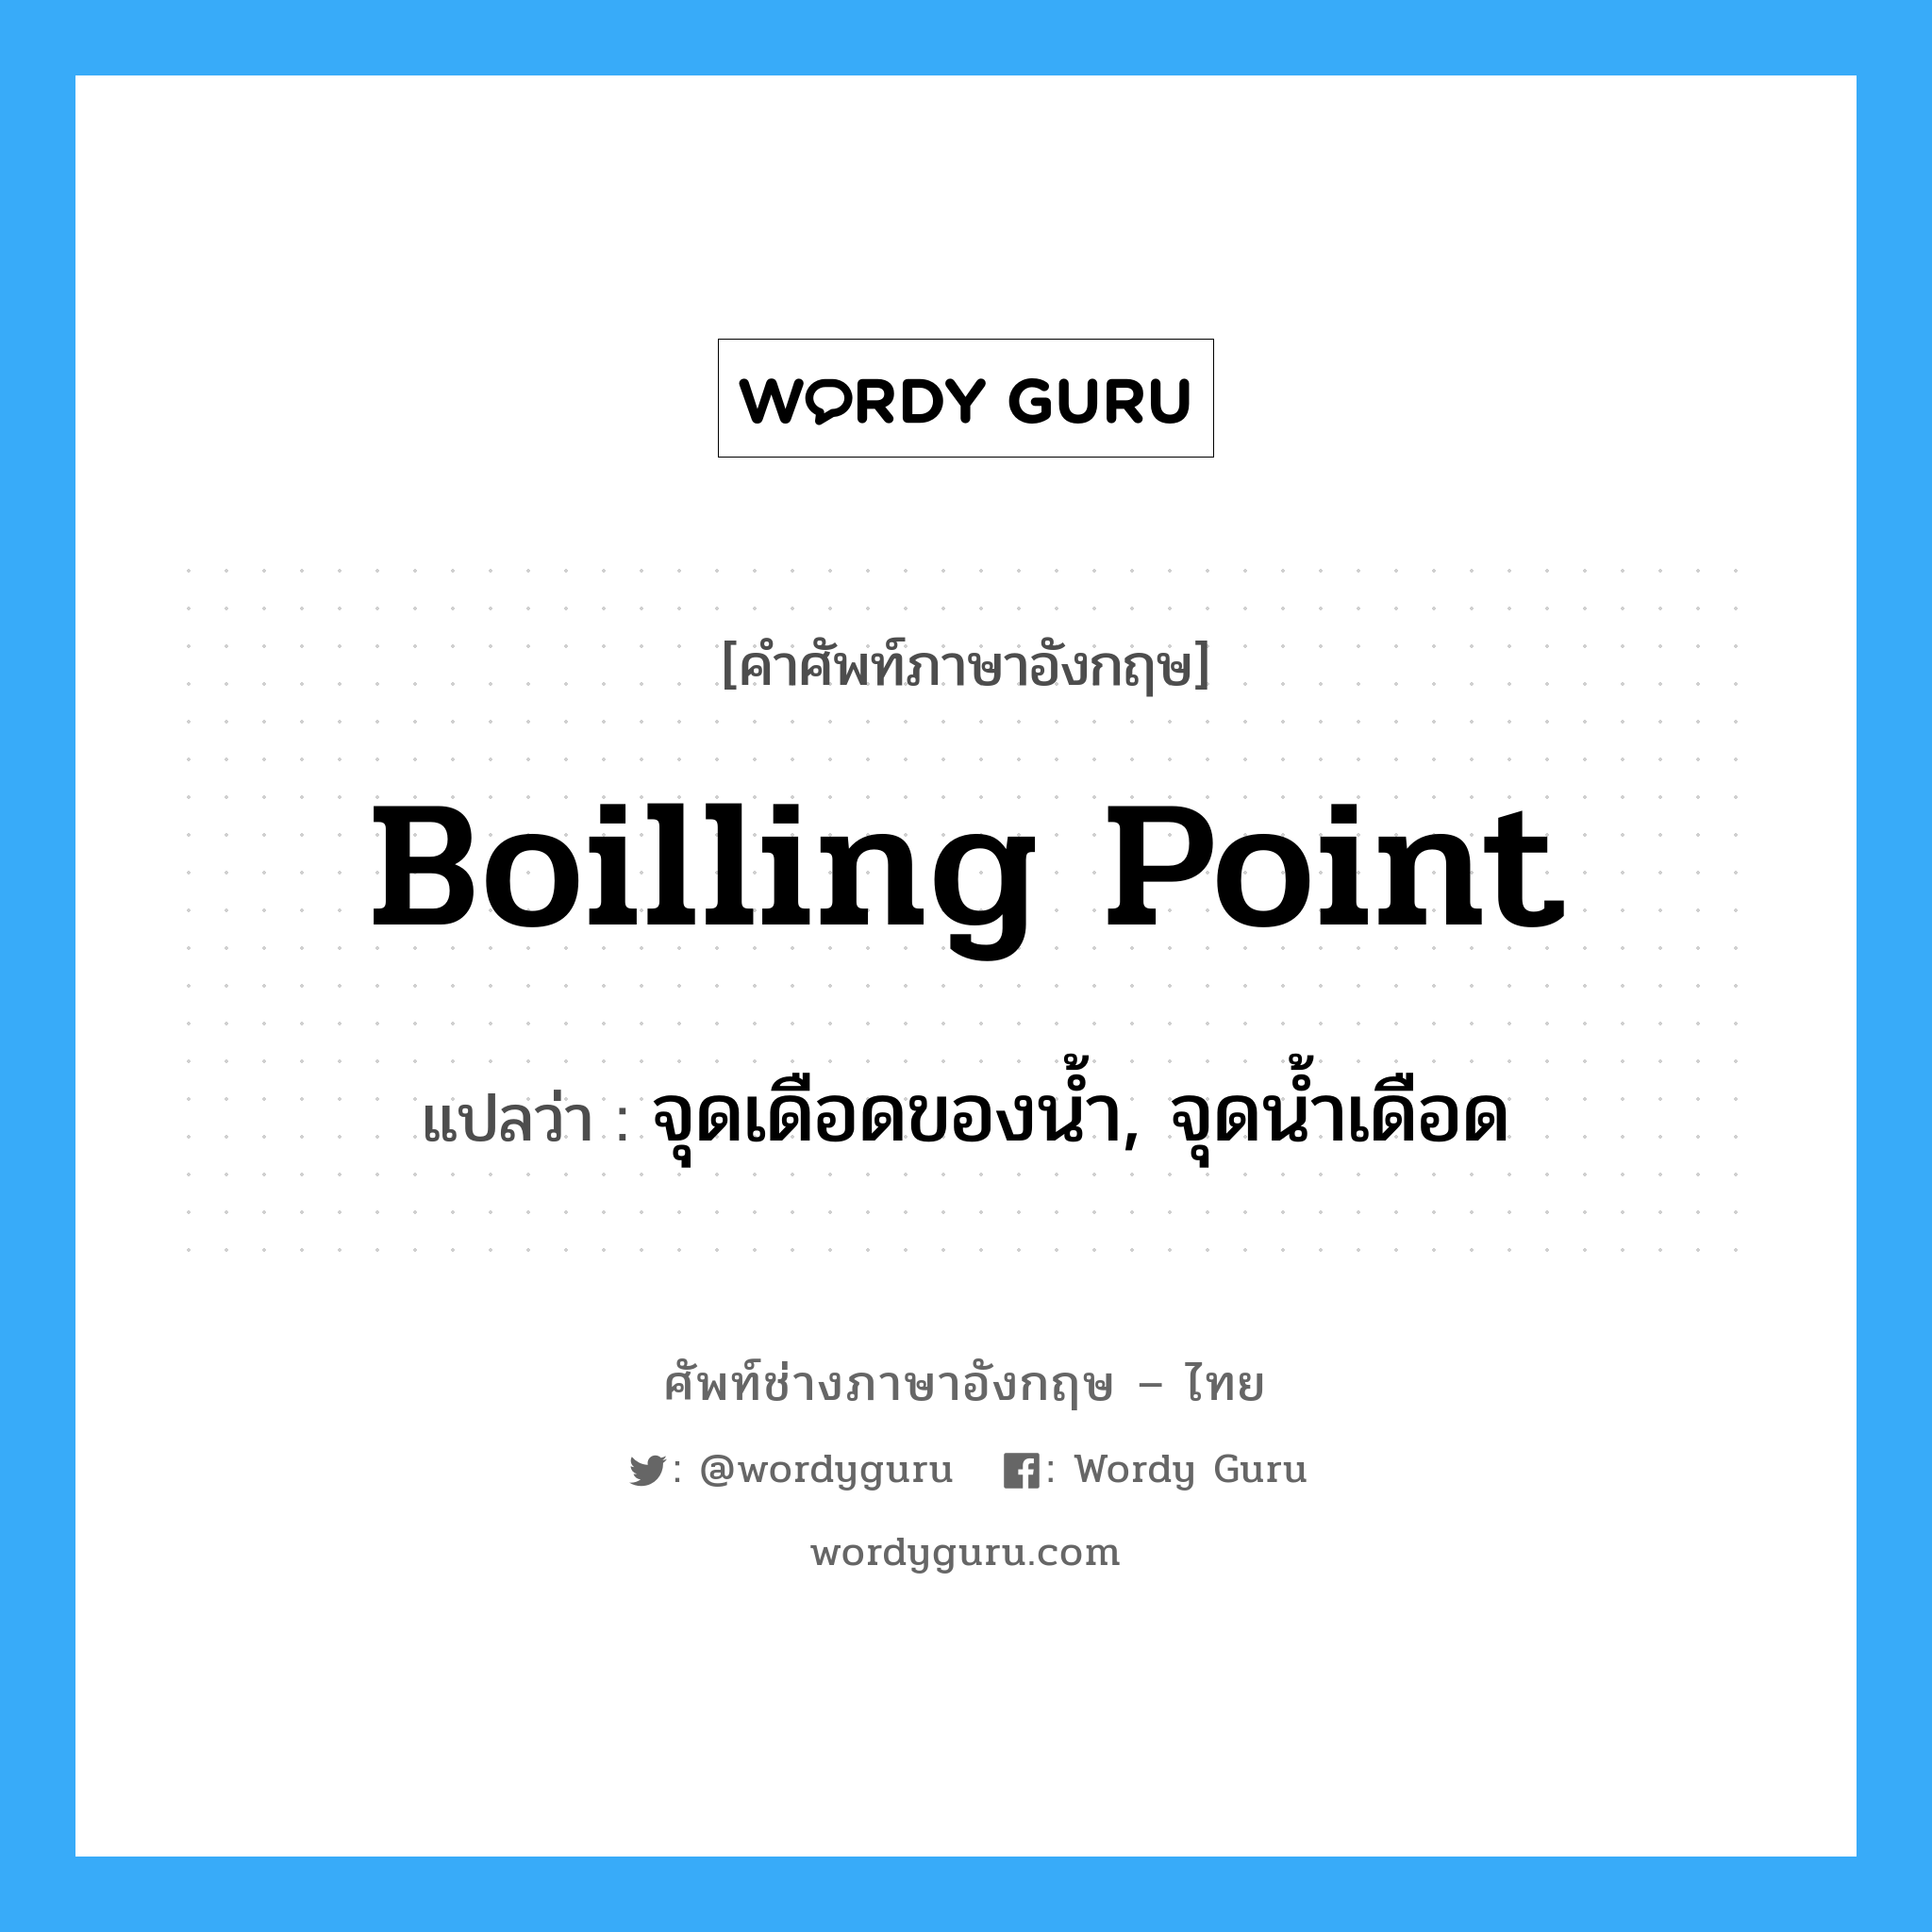 boilling point แปลว่า?, คำศัพท์ช่างภาษาอังกฤษ - ไทย boilling point คำศัพท์ภาษาอังกฤษ boilling point แปลว่า จุดเดือดของน้ำ, จุดน้ำเดือด